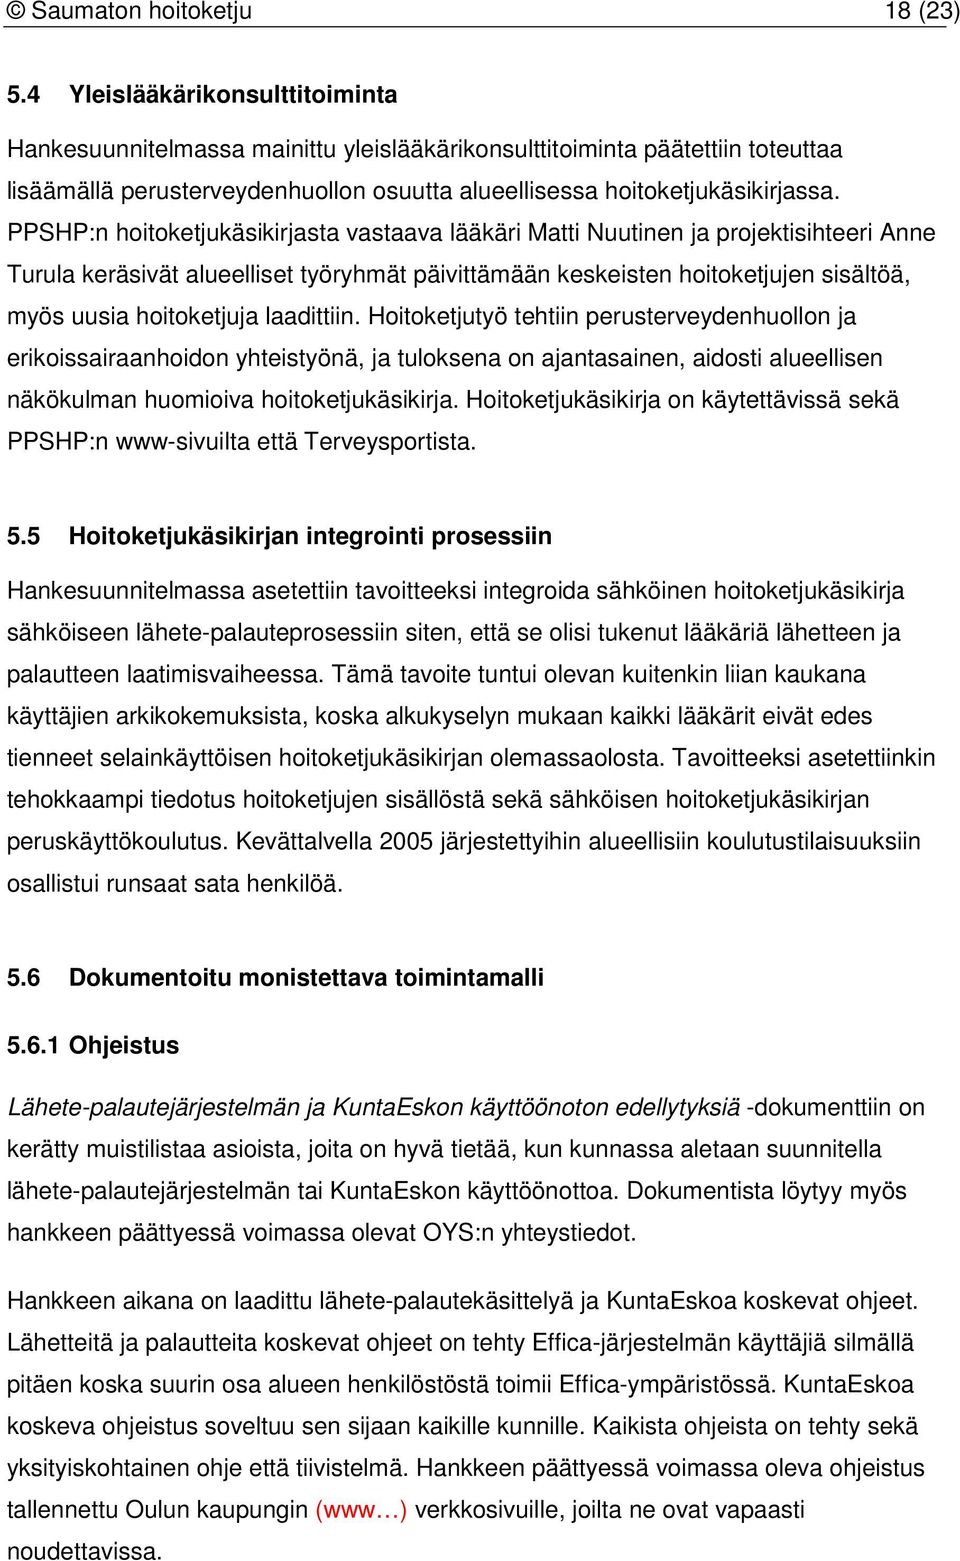 PPSHP:n hoitoketjukäsikirjasta vastaava lääkäri Matti Nuutinen ja projektisihteeri Anne Turula keräsivät alueelliset työryhmät päivittämään keskeisten hoitoketjujen sisältöä, myös uusia hoitoketjuja